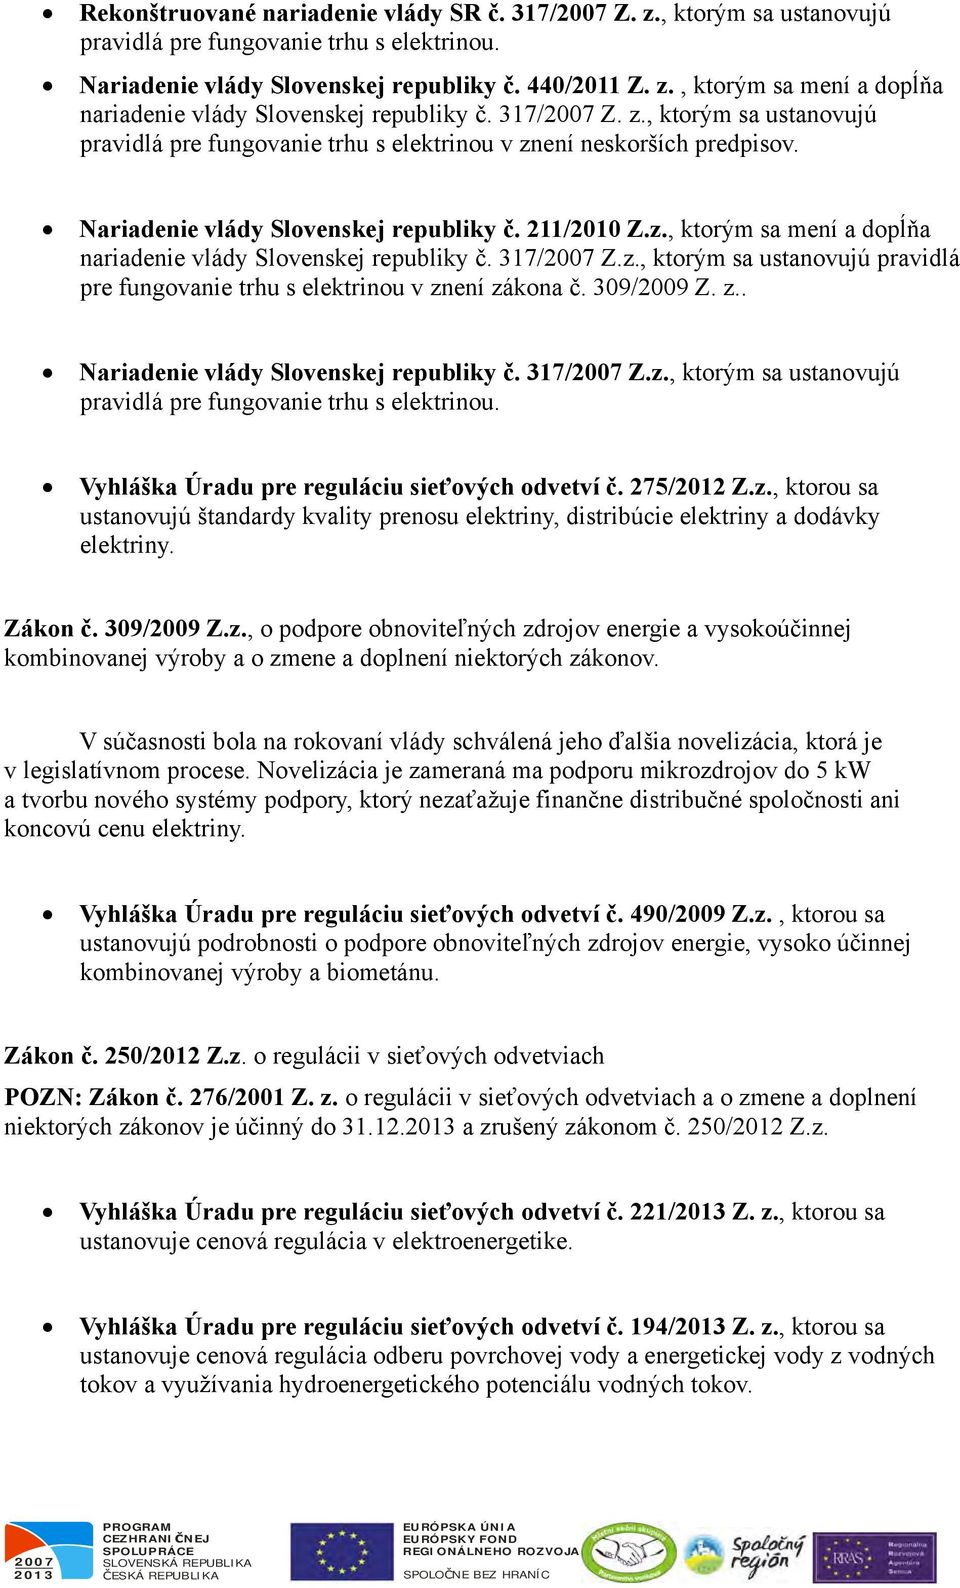 317/ Z.z., ktorým sa ustanovujú pravidlá pre fungovanie trhu s elektrinou v znení zákona č. 309/2009 Z. z.. Nariadenie vlády Slovenskej republiky č. 317/ Z.z., ktorým sa ustanovujú pravidlá pre fungovanie trhu s elektrinou. Vyhláška Úradu pre reguláciu sieťových odvetví č.